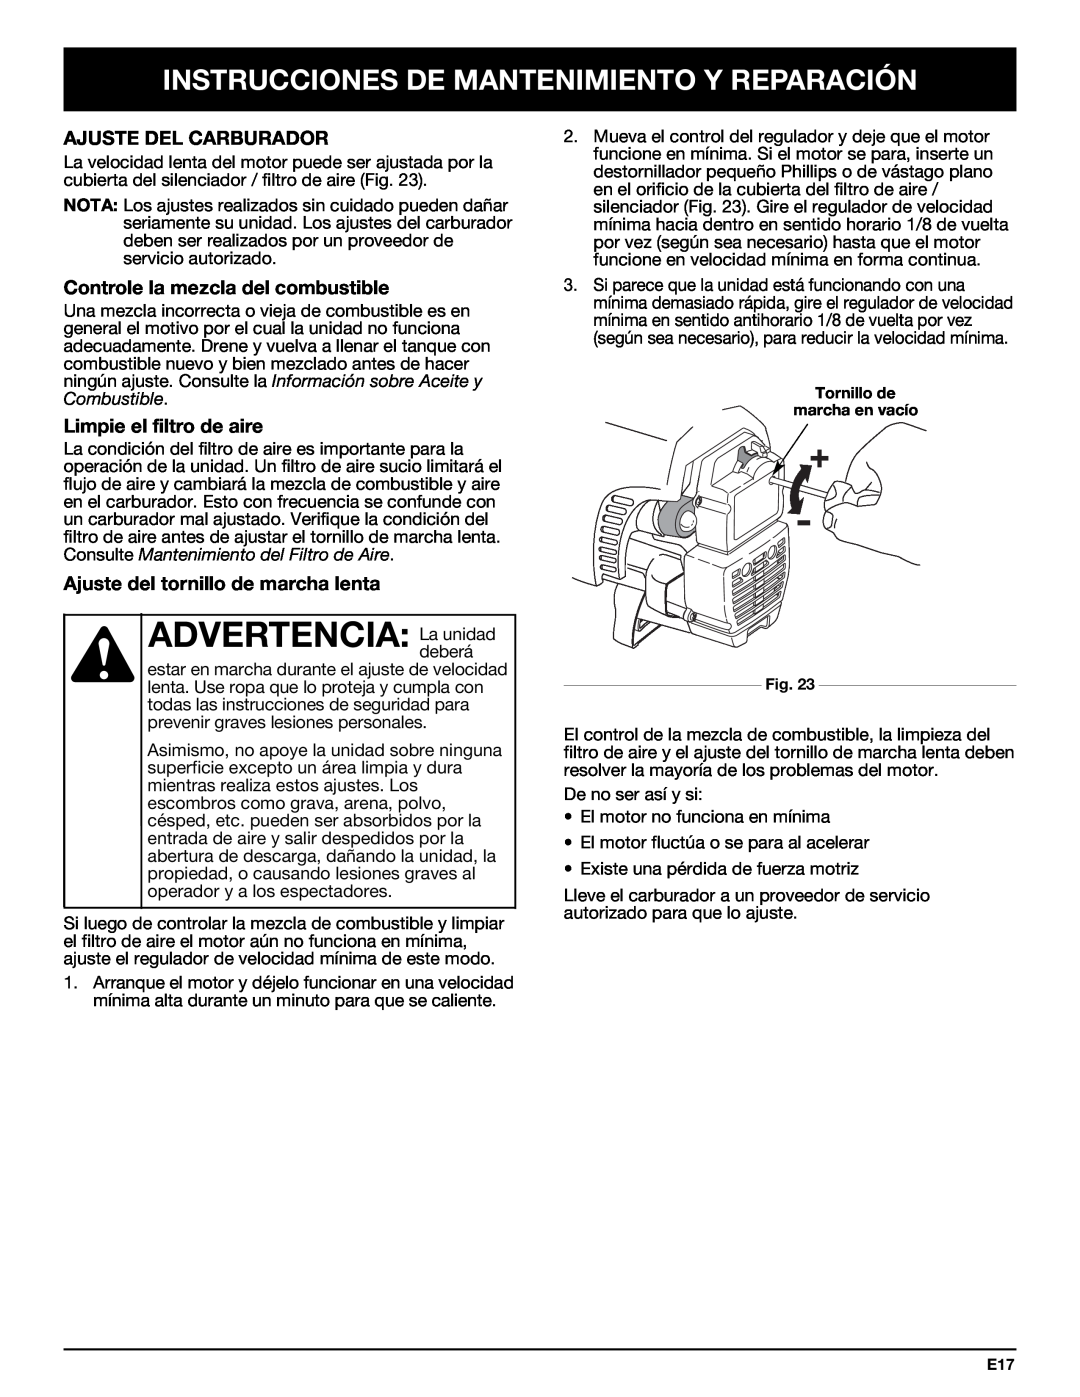 Bolens YM320BV manual ADVERTENCIA:Ladeberáunidad, Ajuste Del Carburador, Controle la mezcla del combustible 